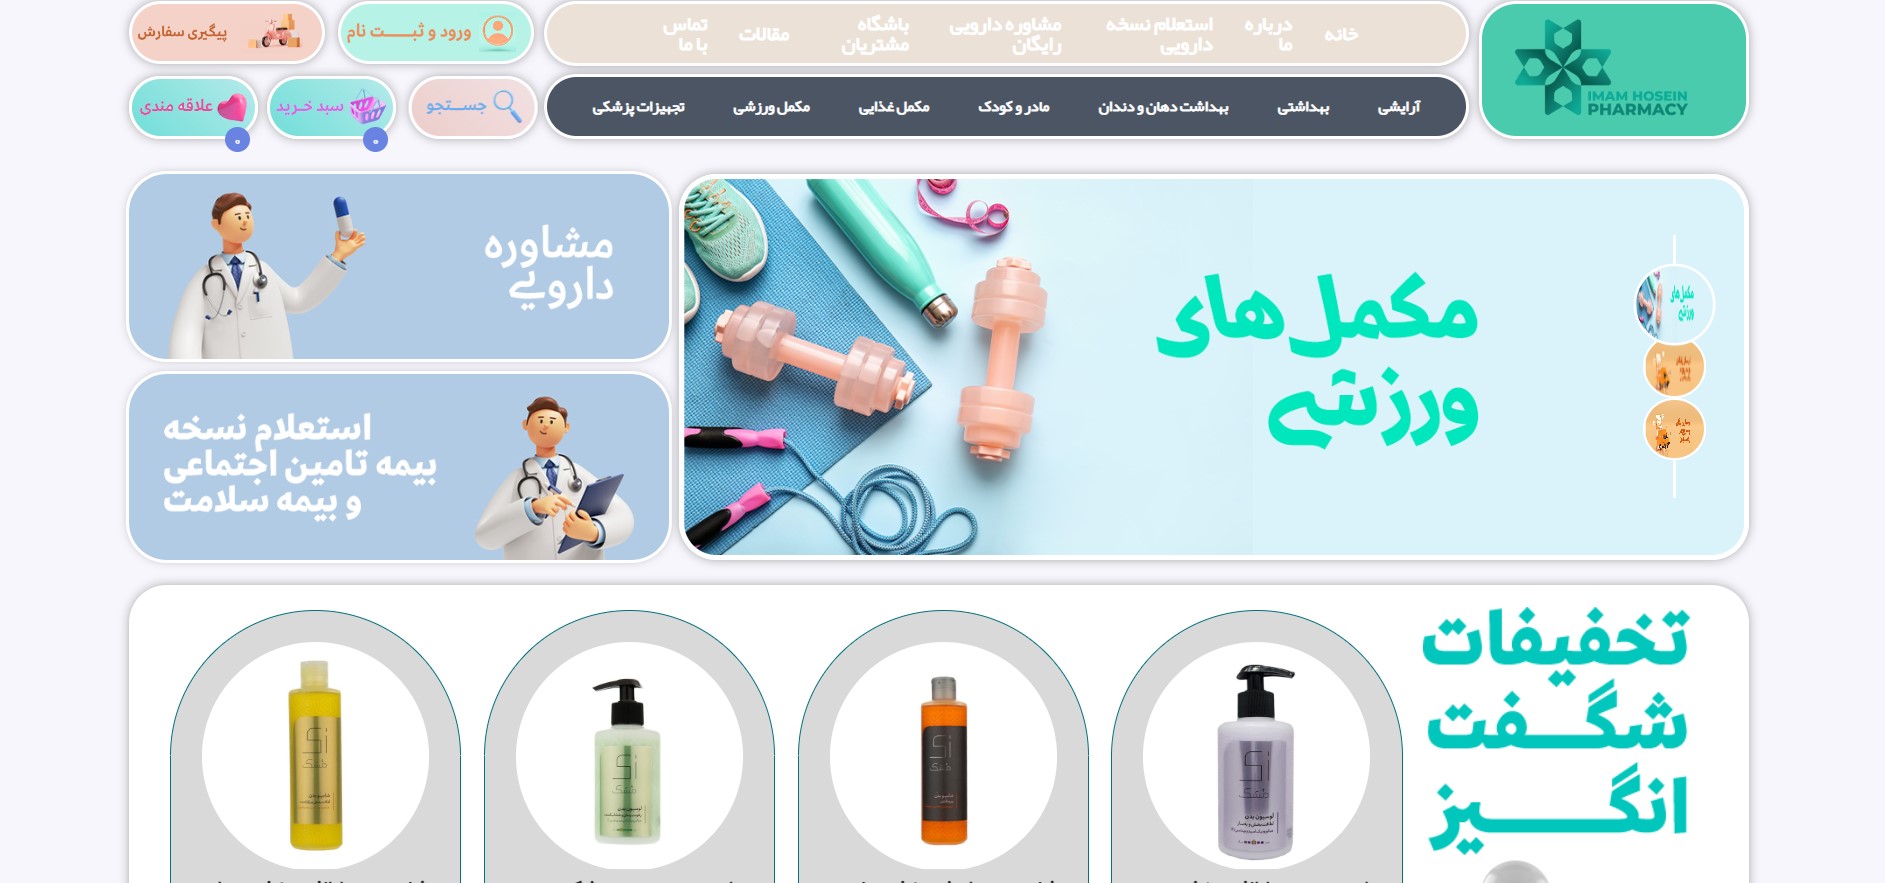 Designing website for drug store (Imam Hossein pharmacy)